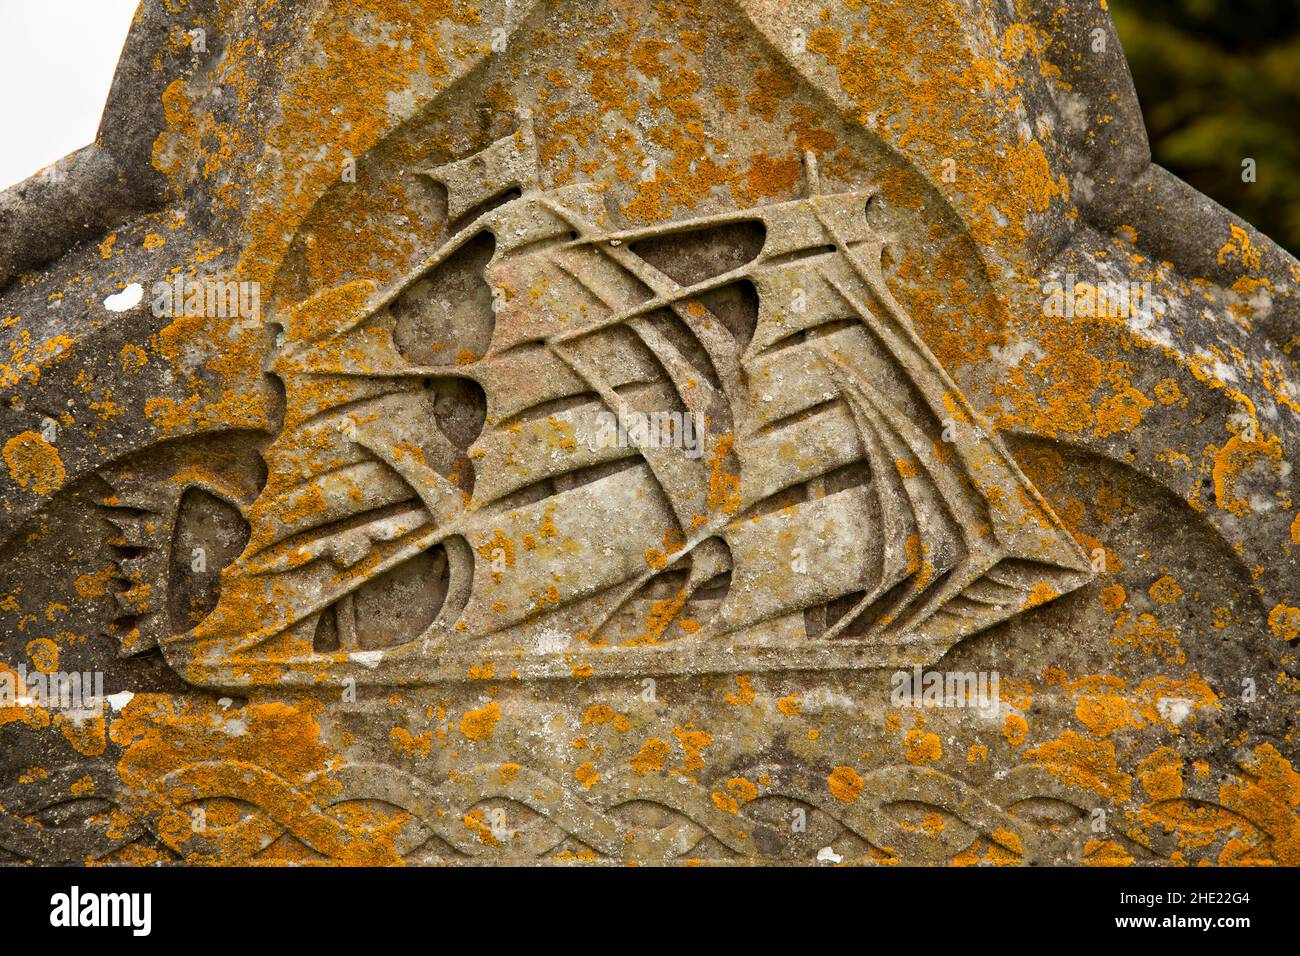 Reino Unido, Gales, Pembrokeshire, Angle, cementerio de Santa María, La lápida de Thomas Jones, cubierta de líquenes, 1899 motivos de velero Foto de stock